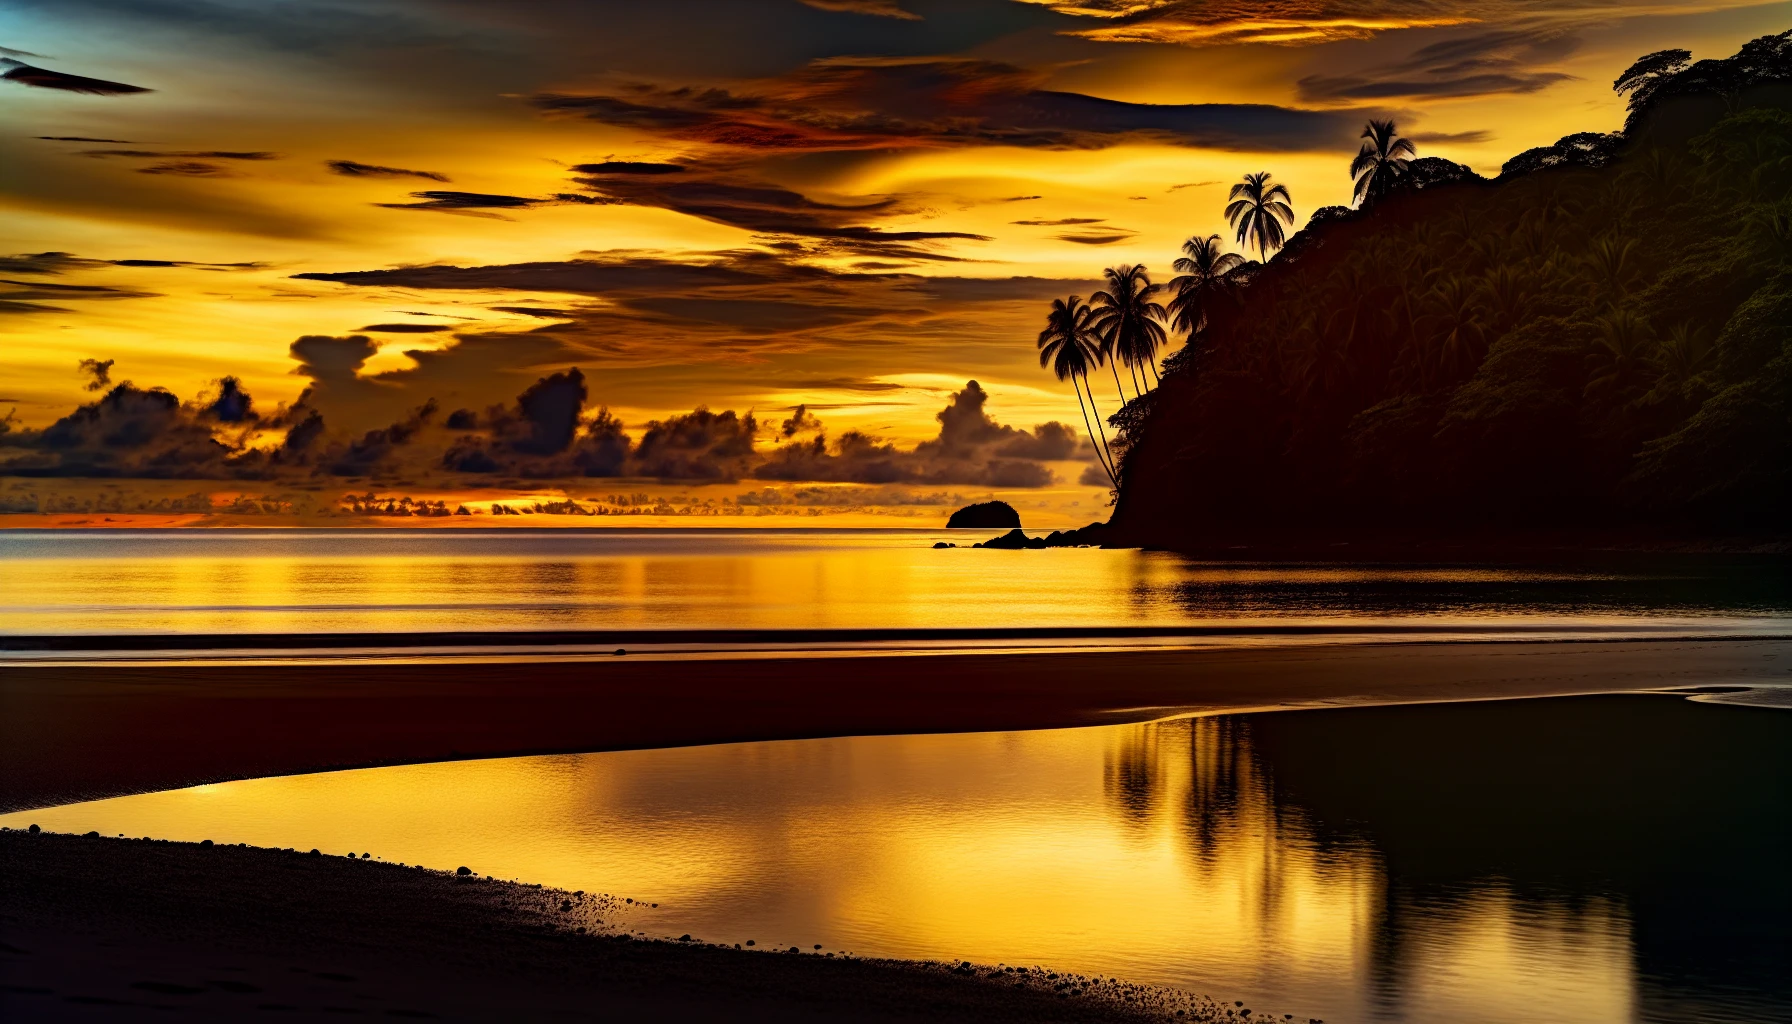 Sunset at Playa Junquillal